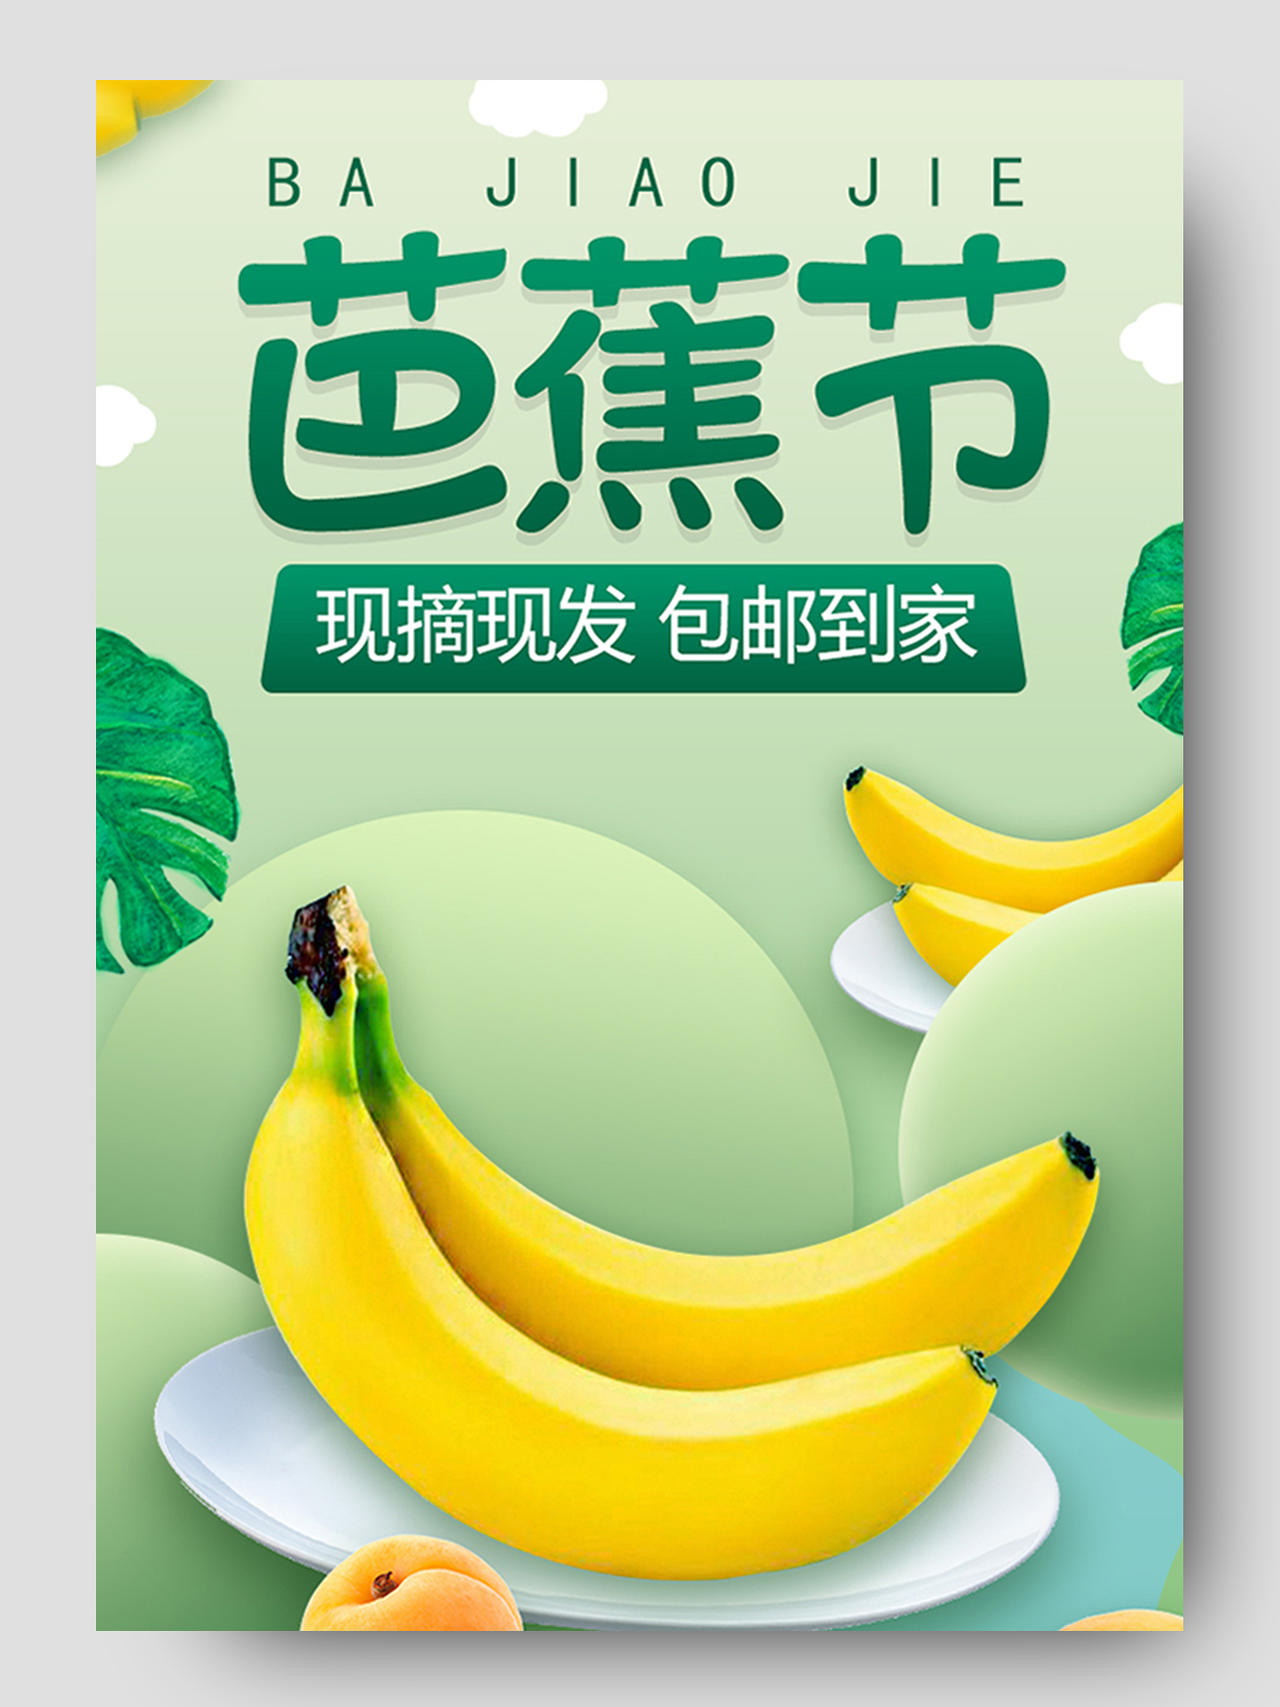 绿色主题芭蕉节卡通水果现摘现发包邮到家水果生鲜秋天秋季香蕉详情页